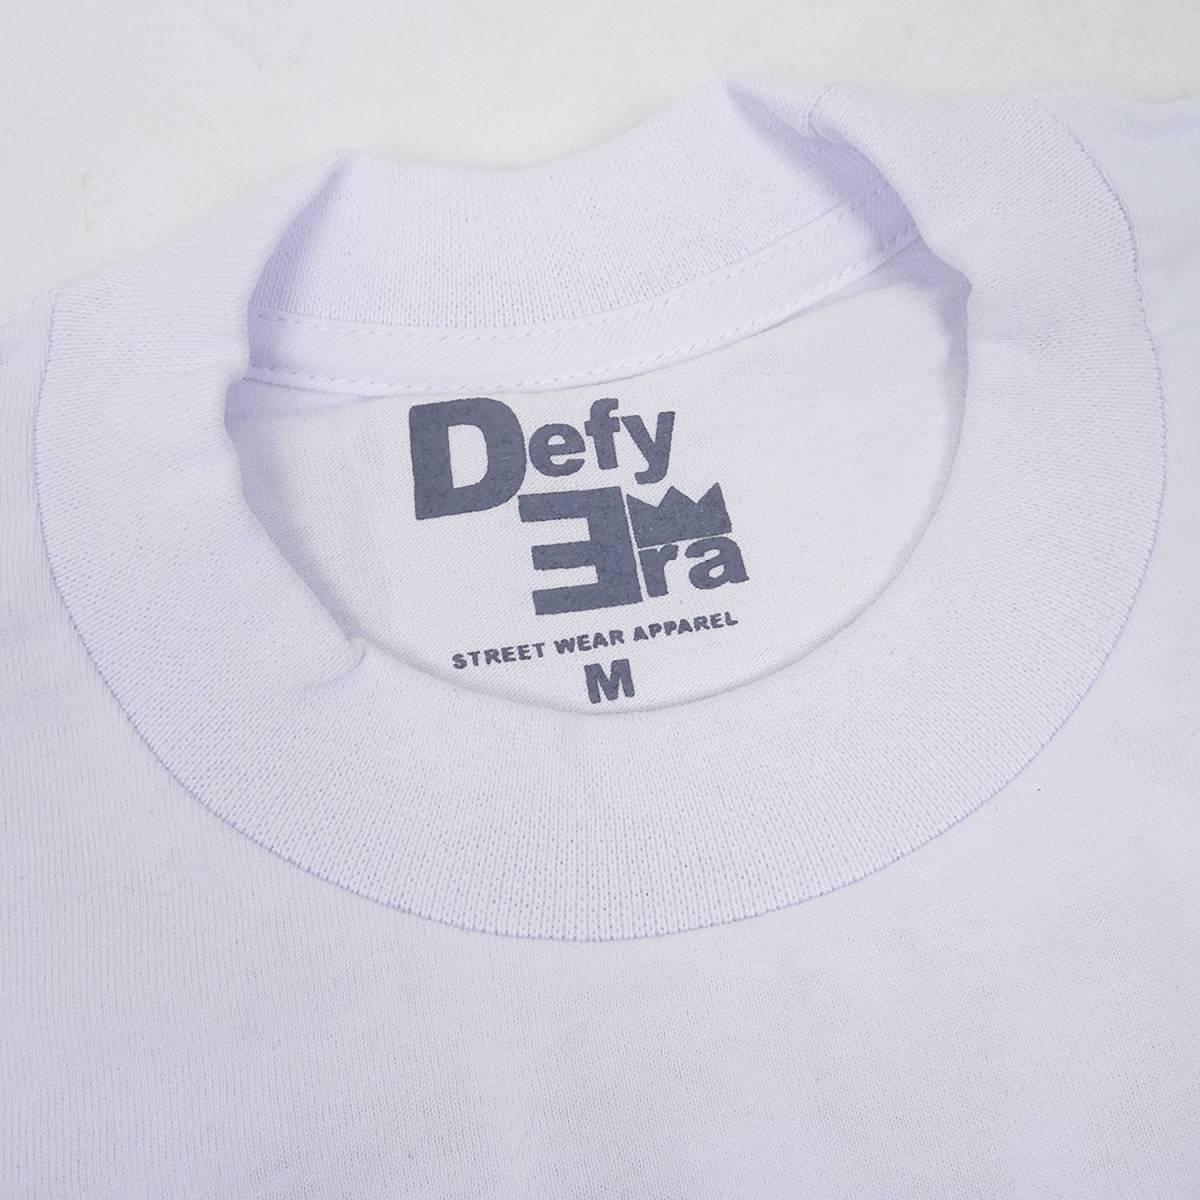 Defy Era GHETTO SOLDIER S/S T Shirts ゲットーソルジャー 半袖 Tシャツ (ホワイト) (XL) [並行輸入品]